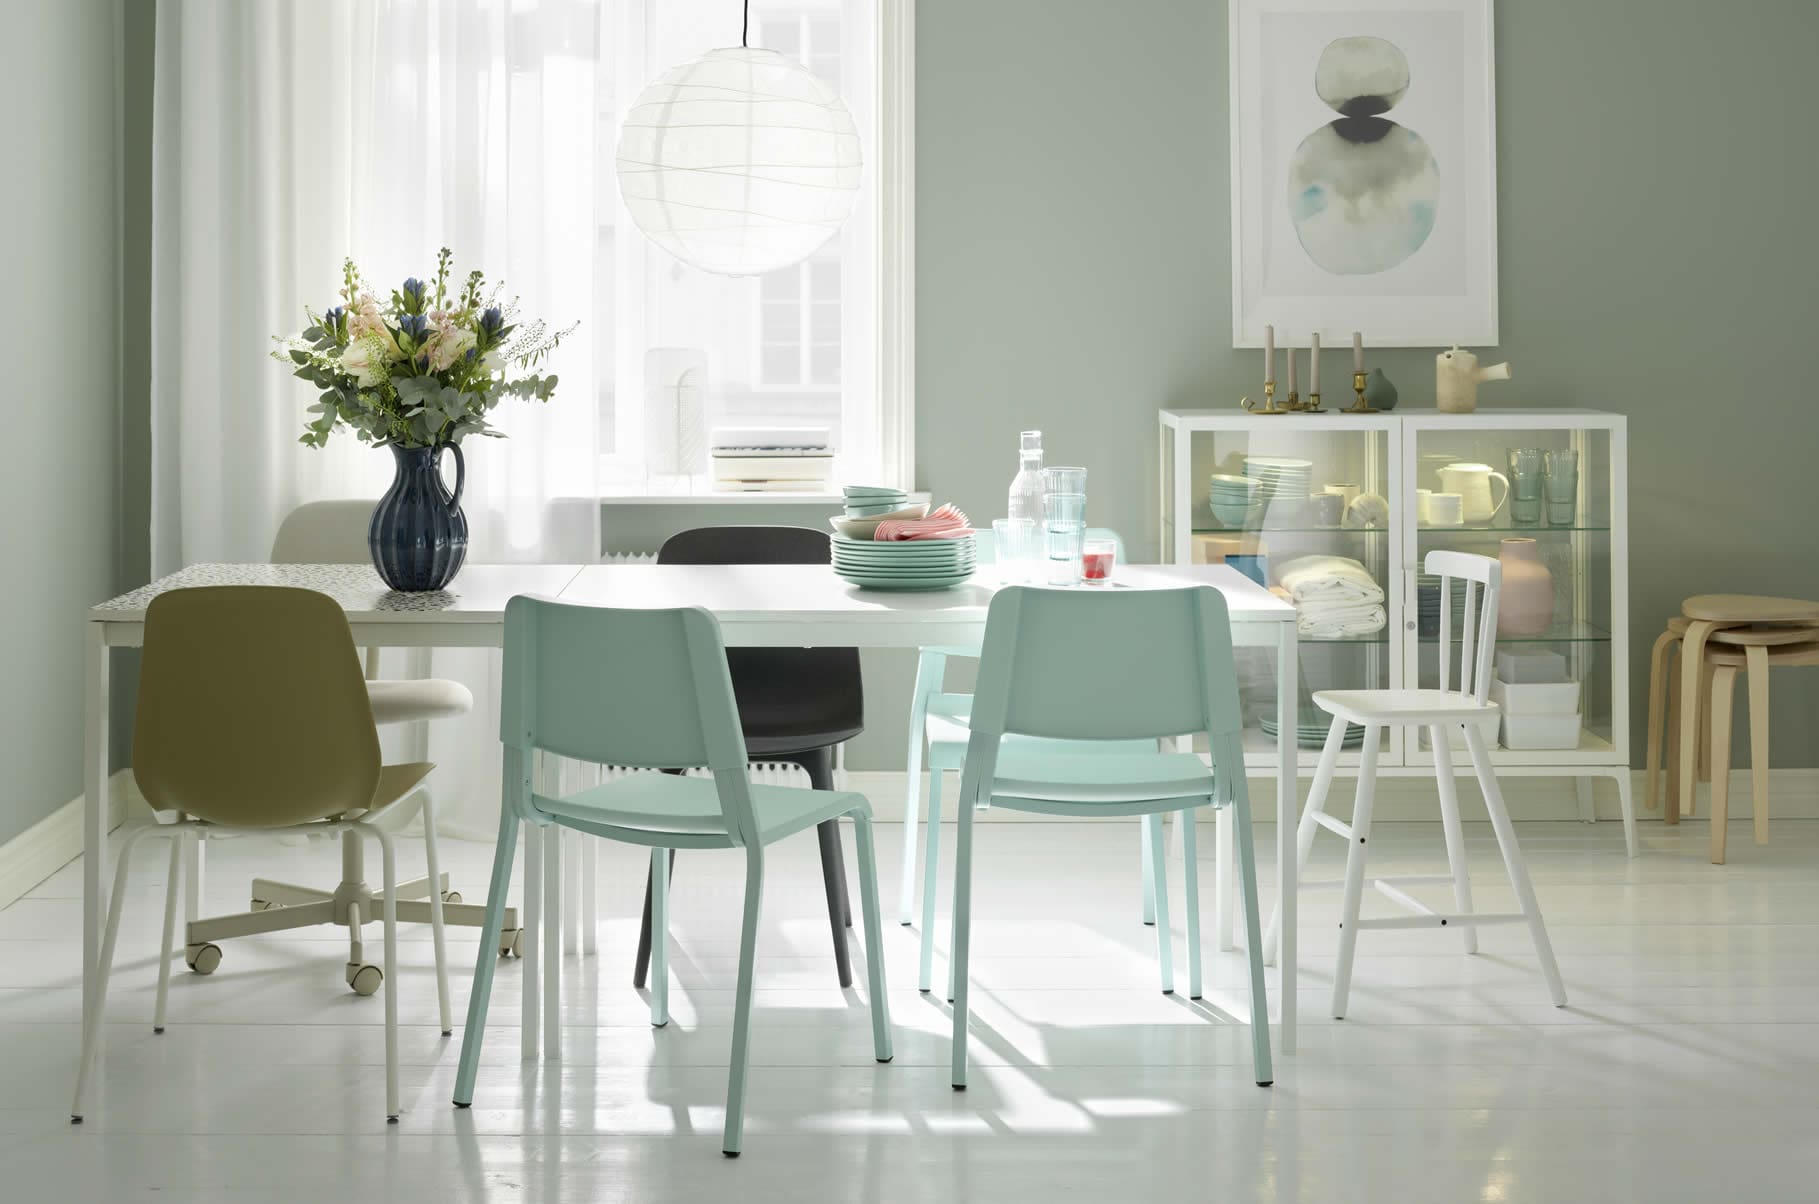 Ideas - Home 3 - Açılabilir yemek masası ile misafir ağırlamak artık daha da keyifli